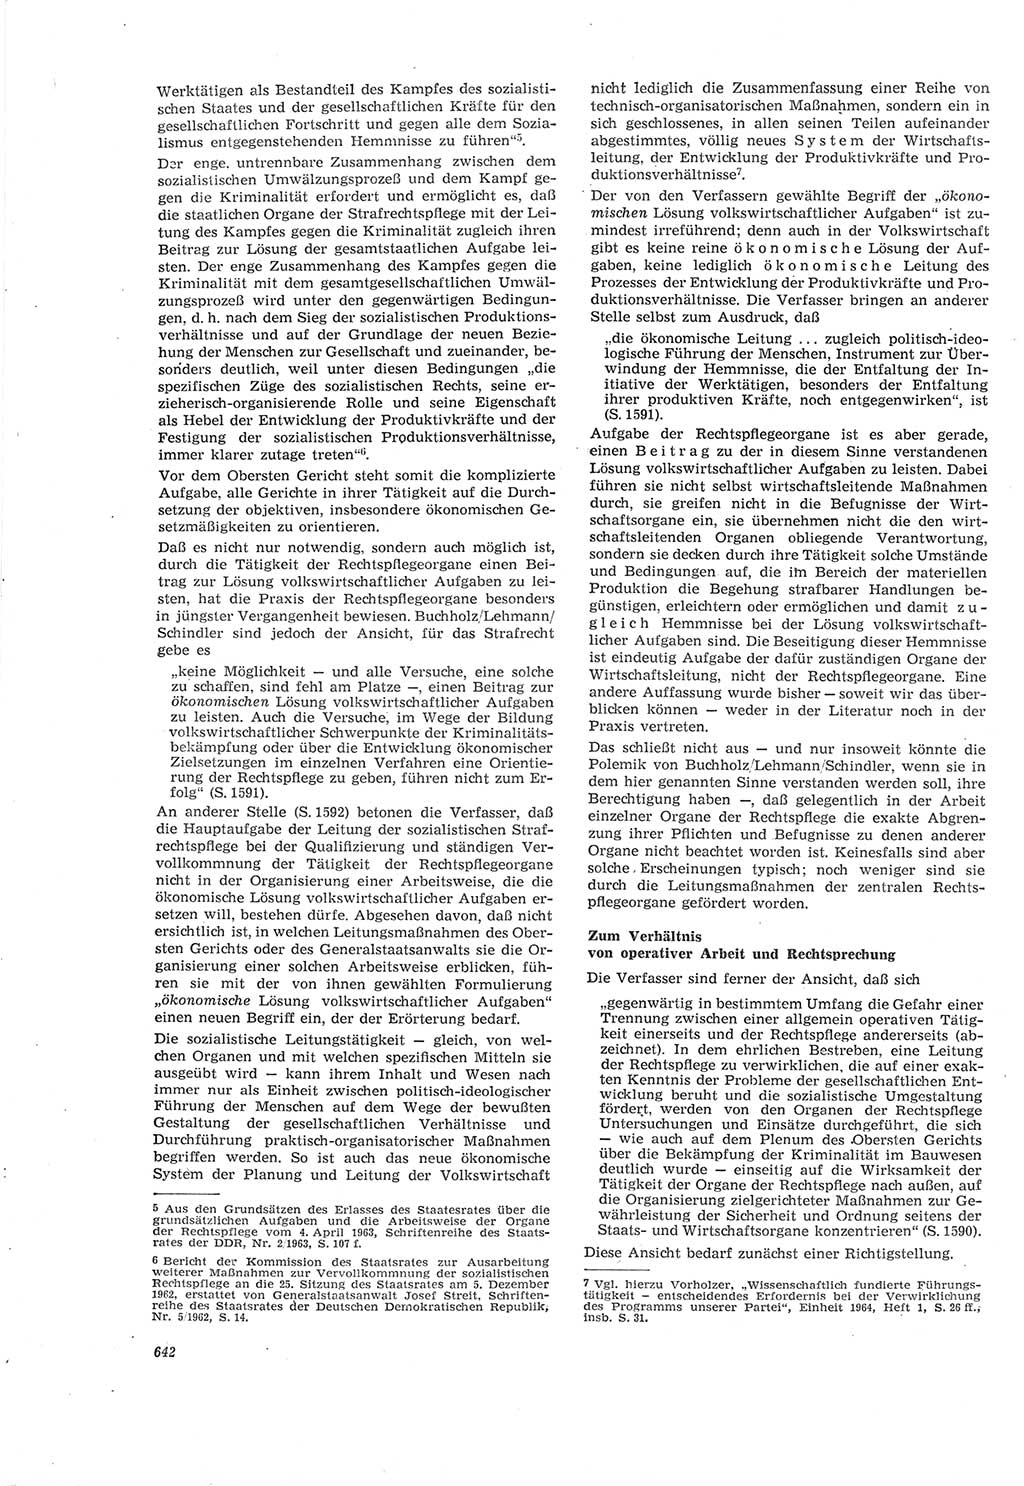 Neue Justiz (NJ), Zeitschrift für Recht und Rechtswissenschaft [Deutsche Demokratische Republik (DDR)], 18. Jahrgang 1964, Seite 642 (NJ DDR 1964, S. 642)